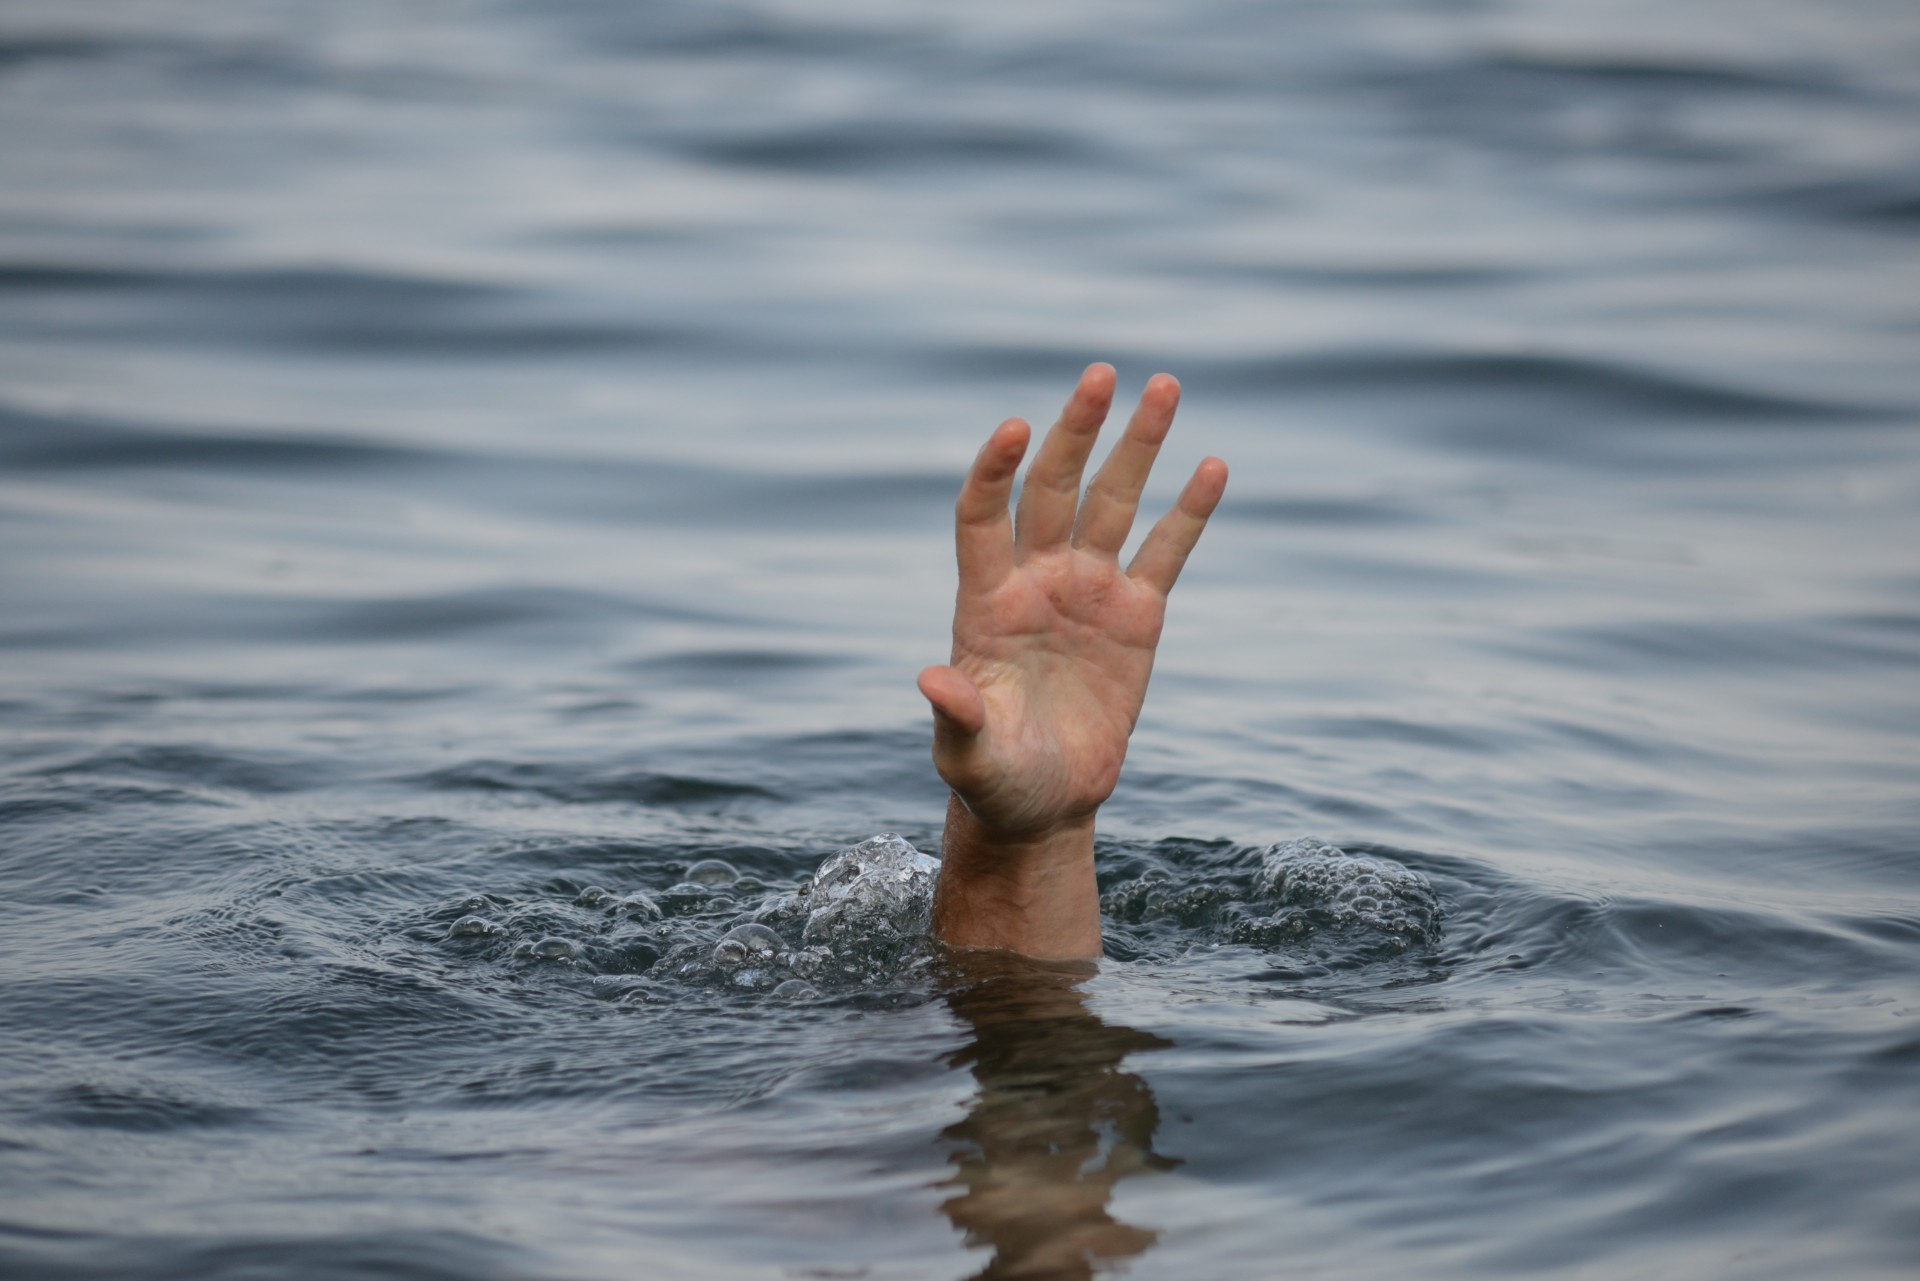 В Баку подросток упал в море при попытке сделать фото на бульваре - ВИДЕО